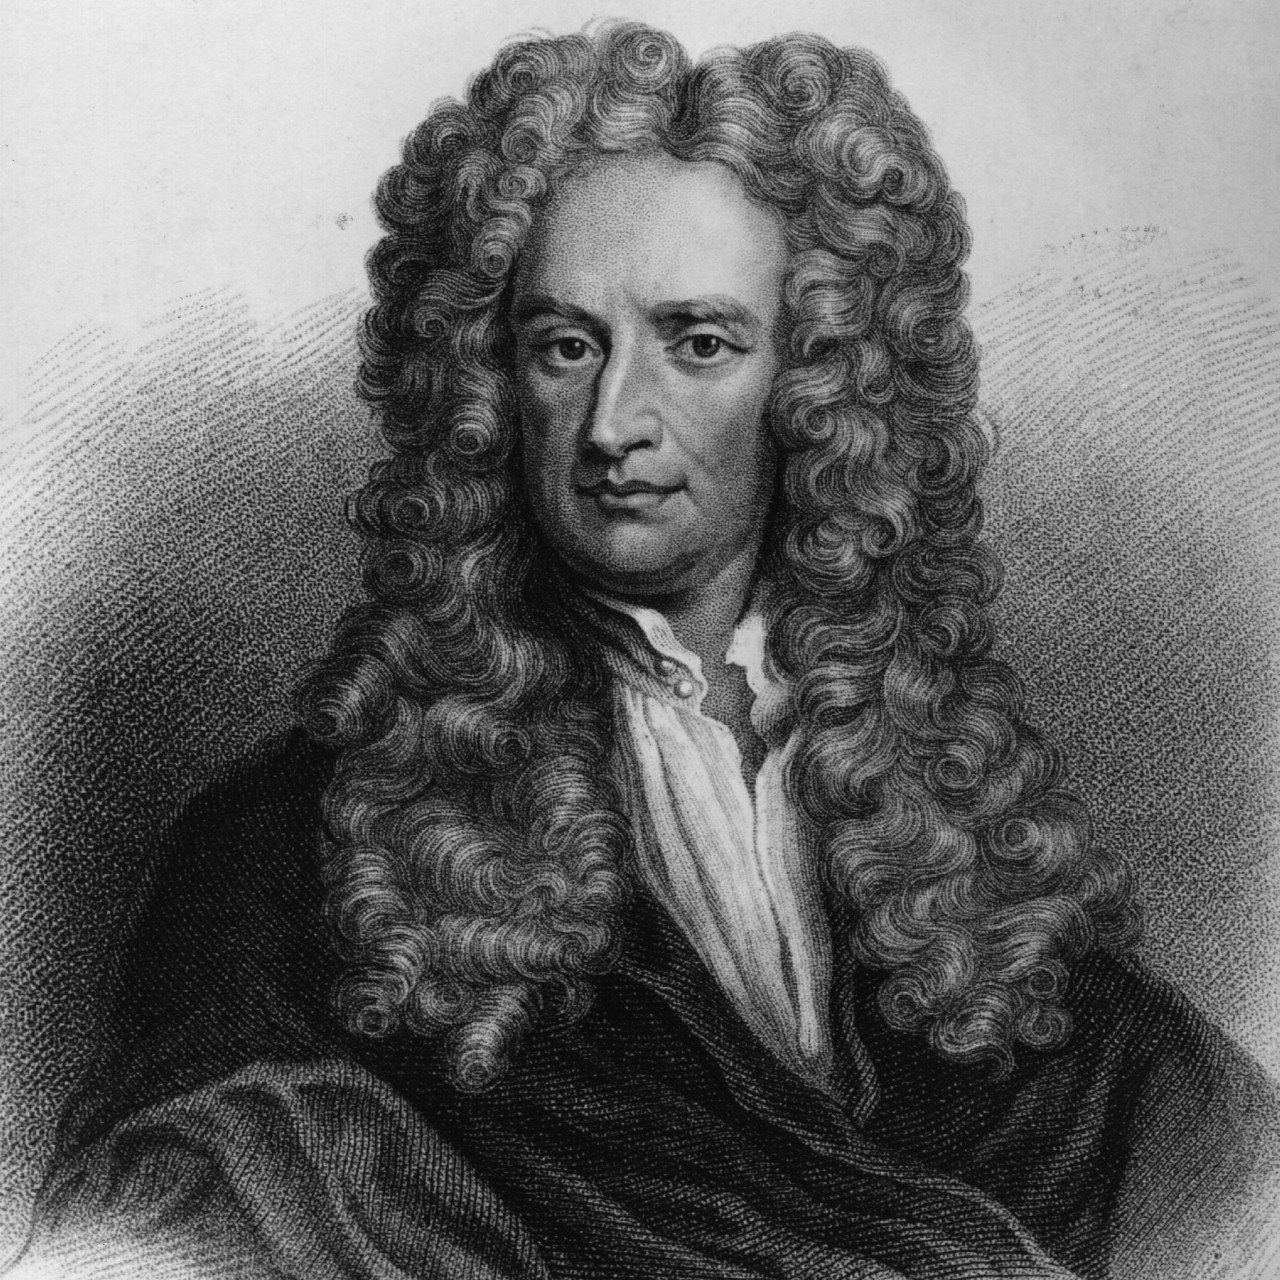 7. Isaac Newton